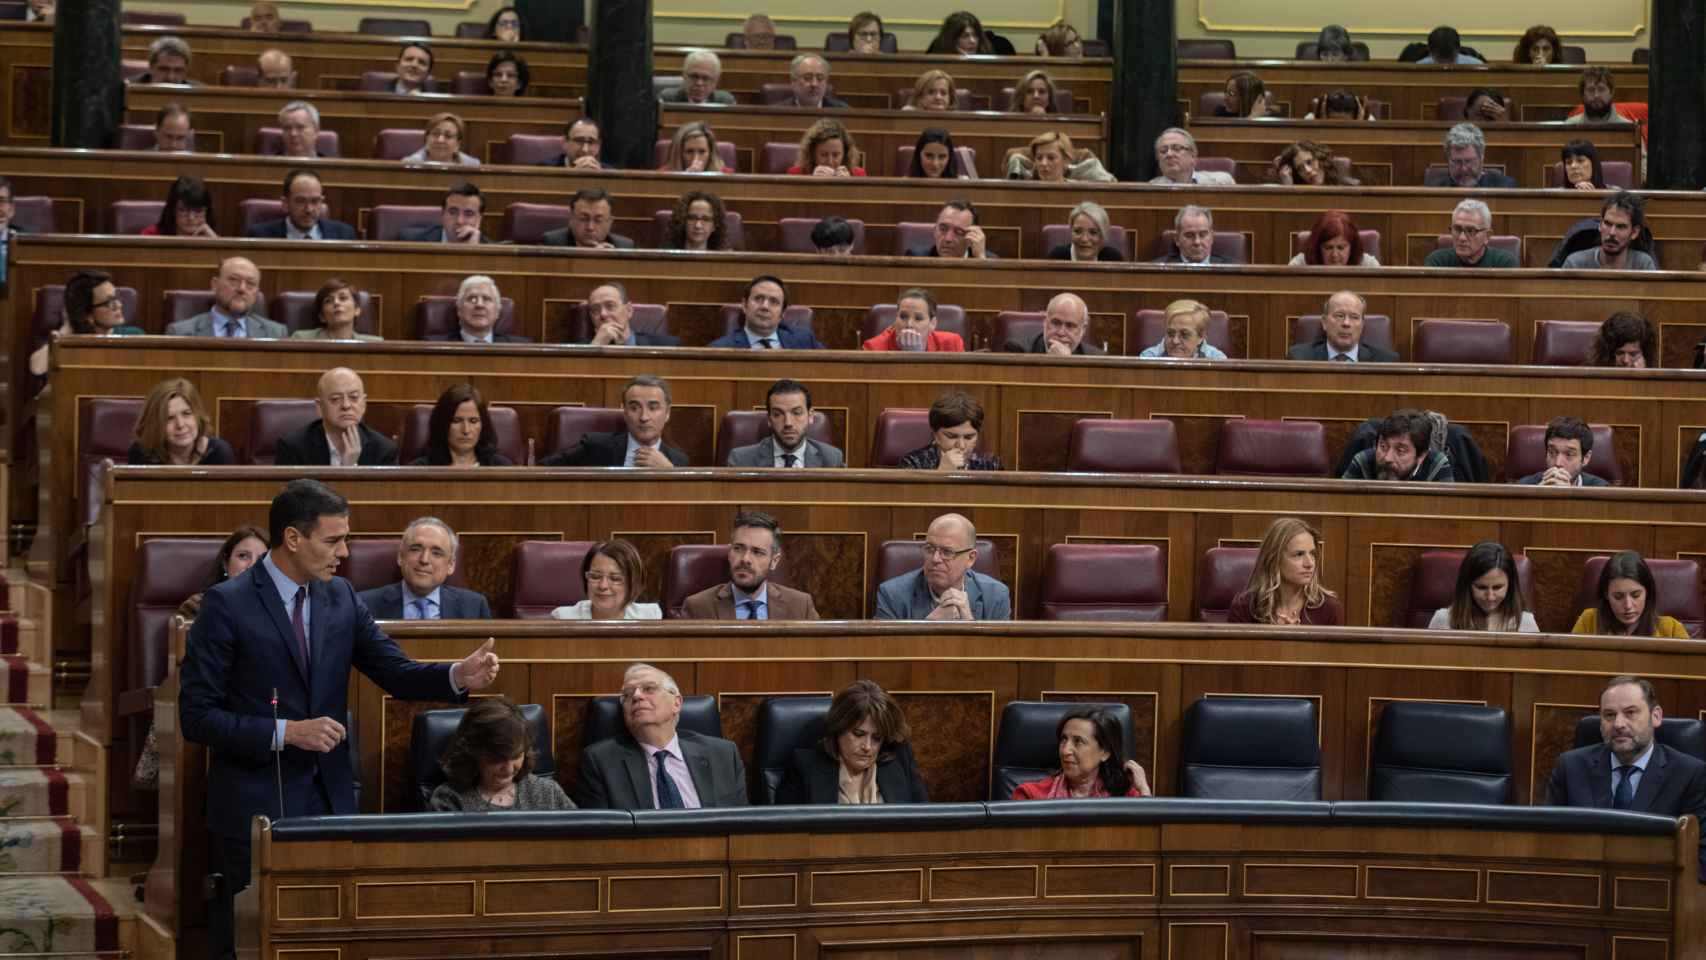 El presidente del Gobierno, Pedro Sánchez, interviene en el Congreso de los Diputados desde su escaño.